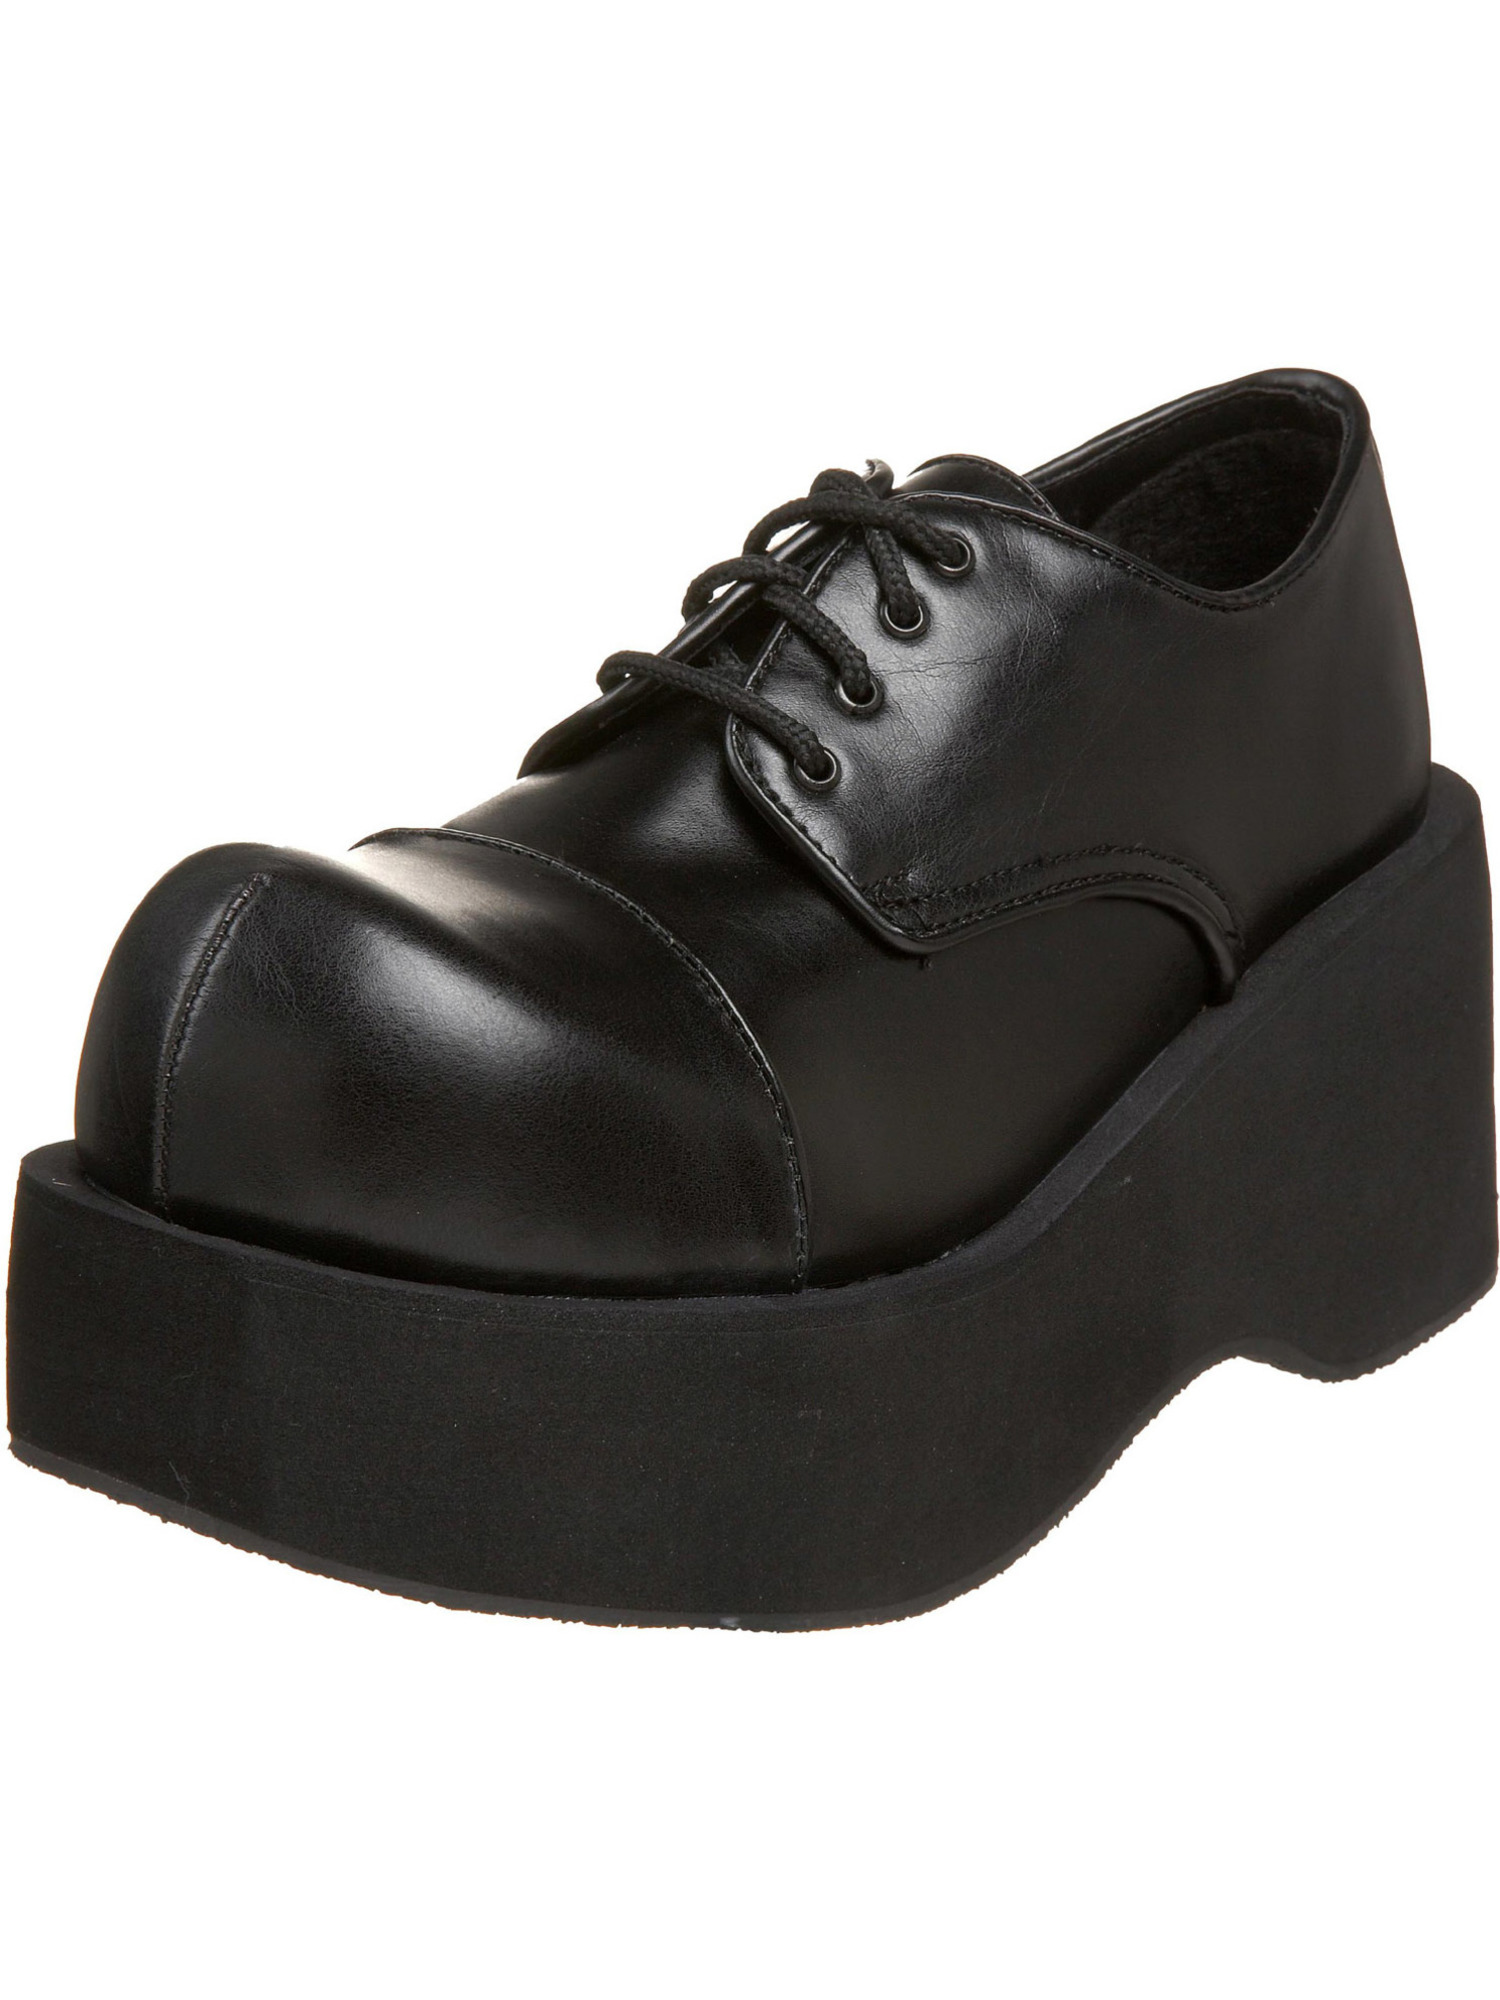 Мужская обувь на платформе. Кроссовки Demonia Shoes. Туфли Demonia. Ботинки Demonia черный dank101/b/PU. Demonia Shoes туфли мужские.